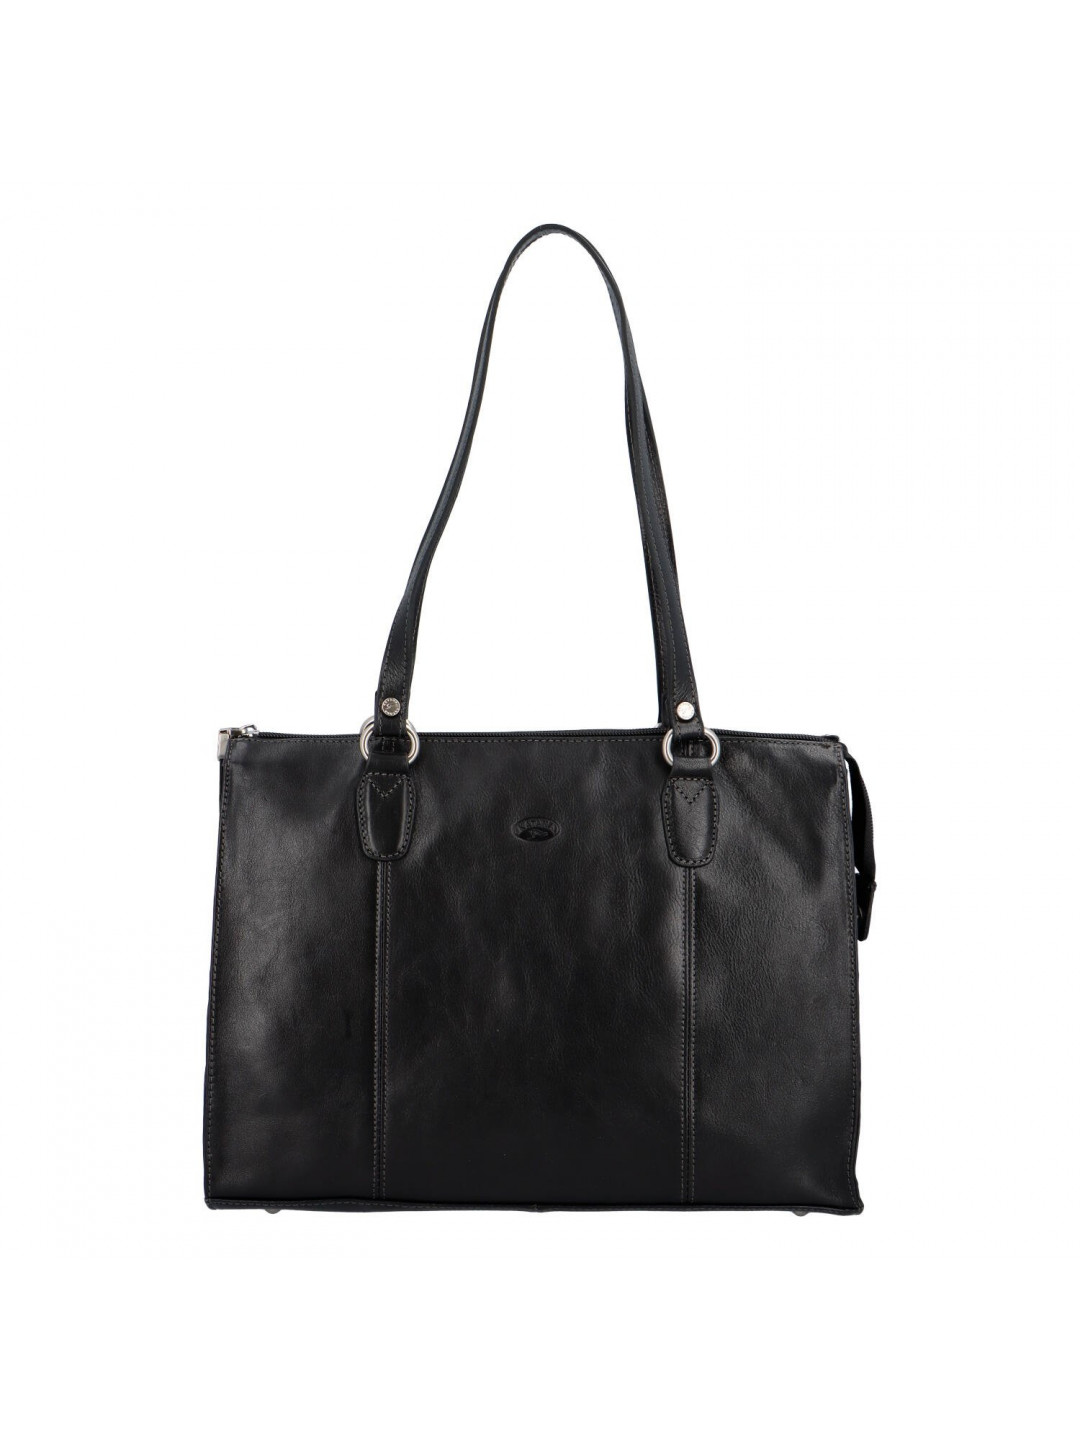 Dámská kožená kabelka přes rameno černá – Katana Frankye